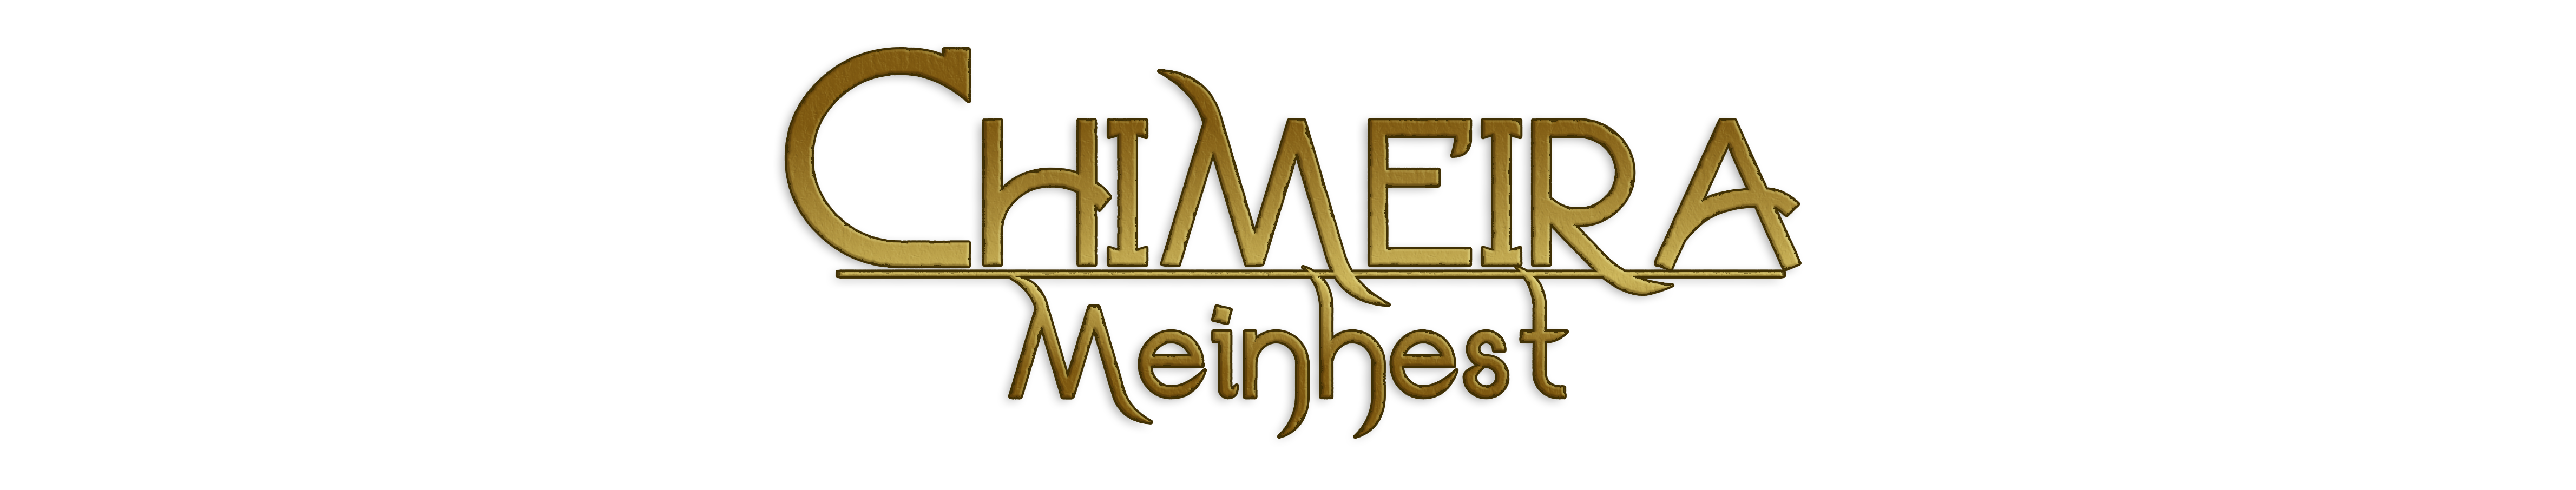 Chimeira Meinhest